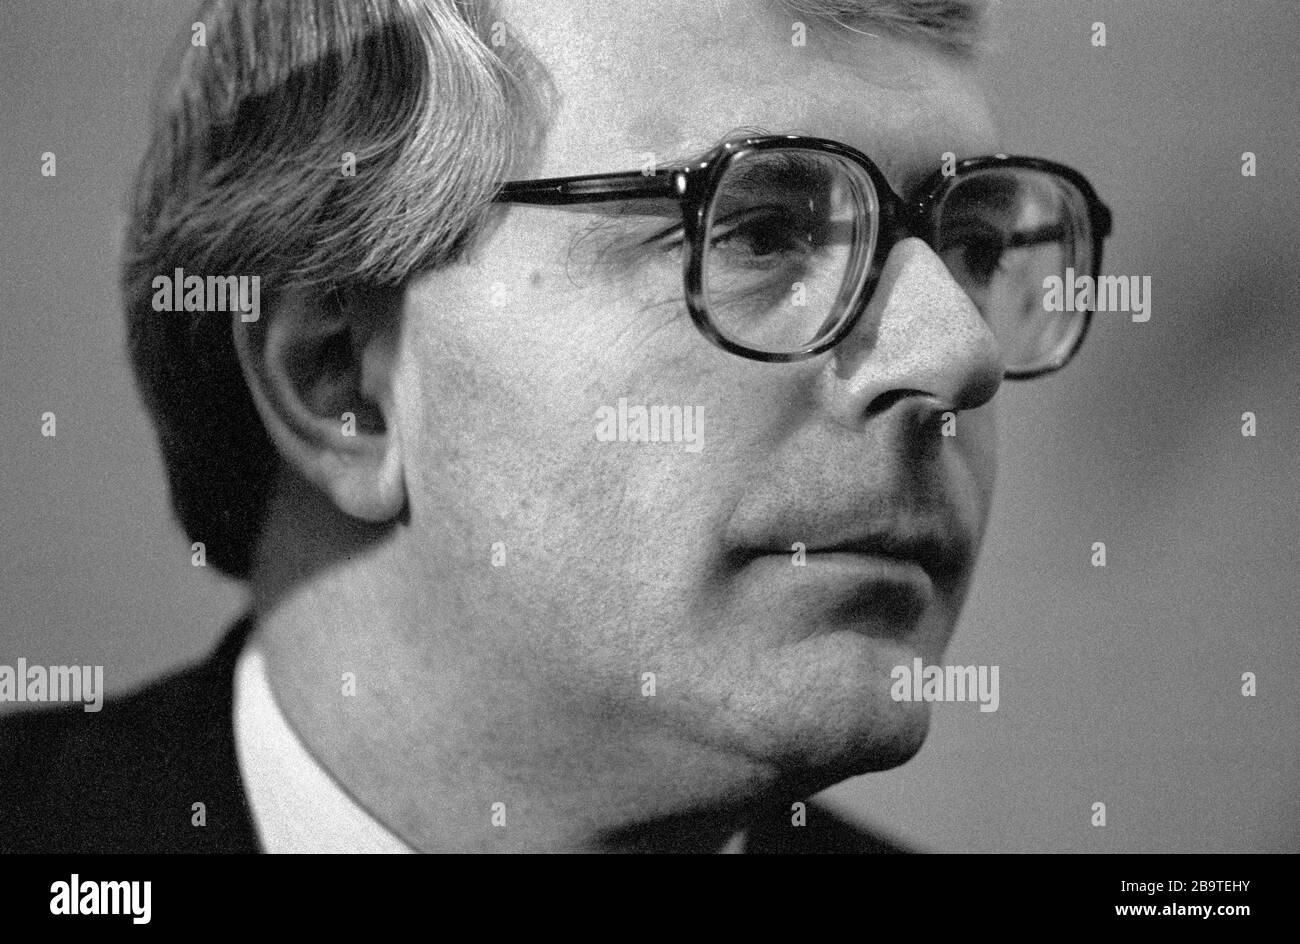 Sir John Major, ehemaliger Premierminister der konservativen Partei Großbritanniens. Stockfoto